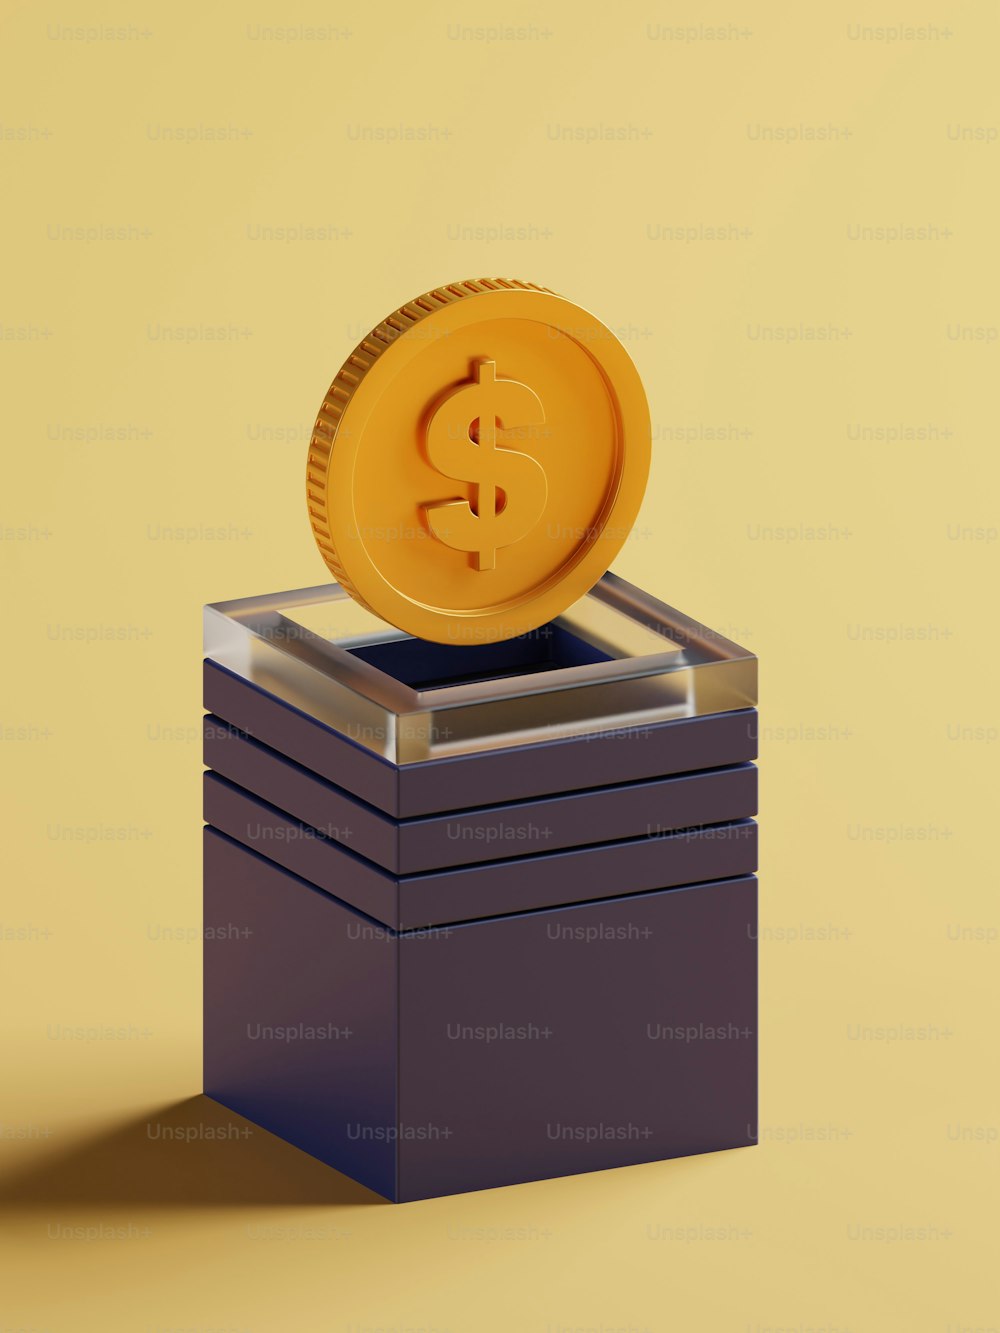 Una moneta d'oro da un dollaro seduta sopra una pila di scatole nere